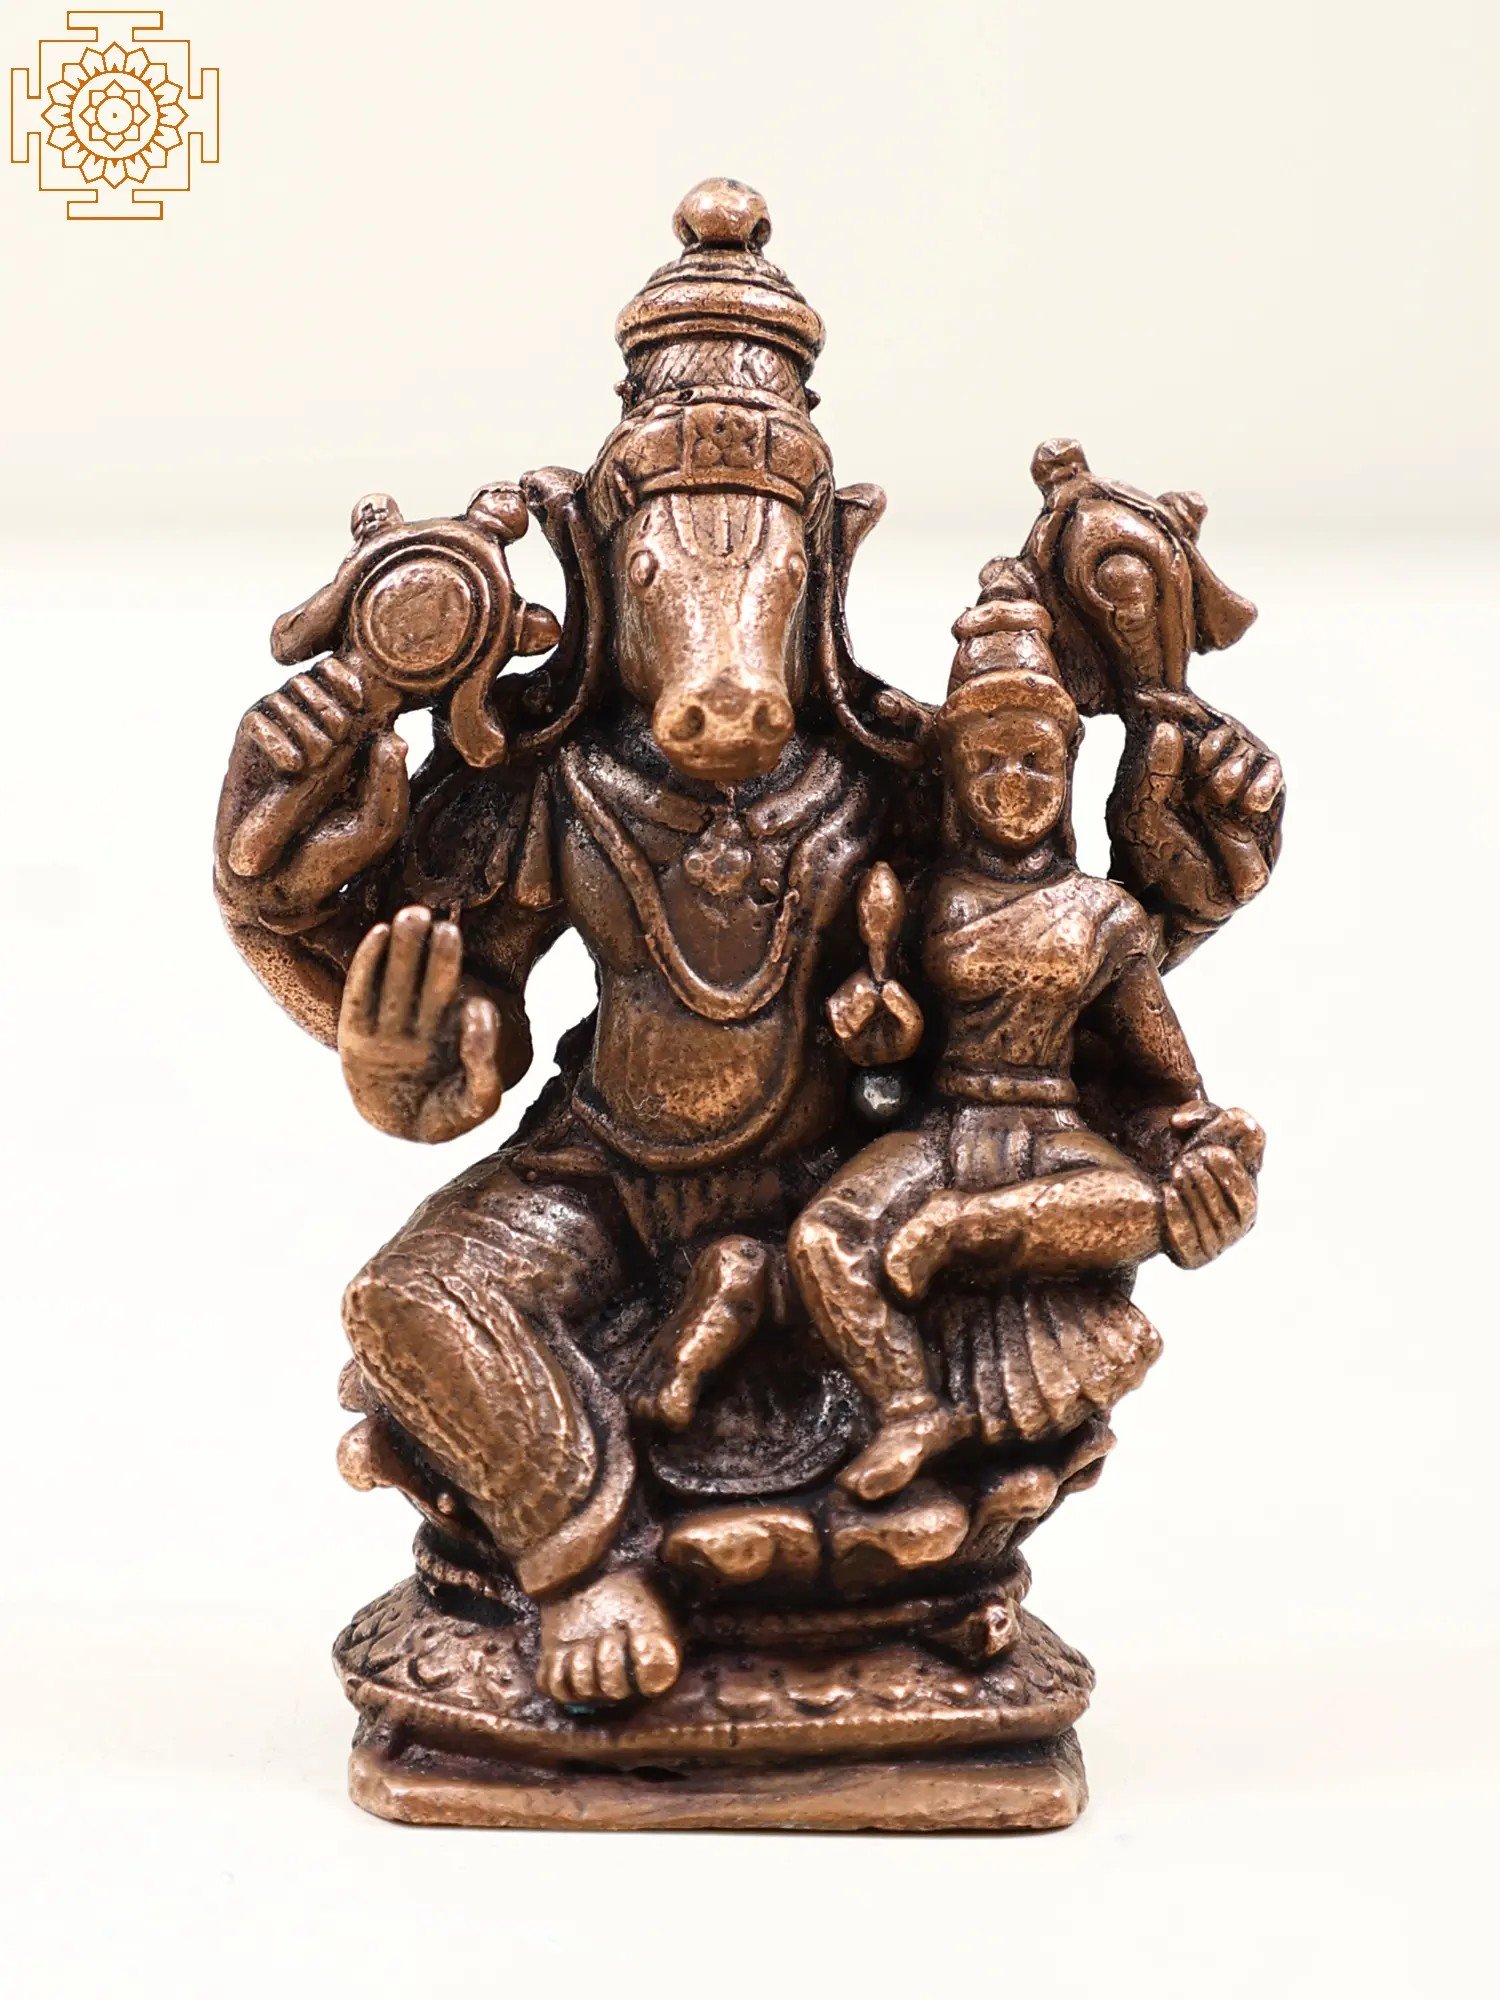 Varaha Avatara of Vishnu with Bhudevi Seated on Pedestal